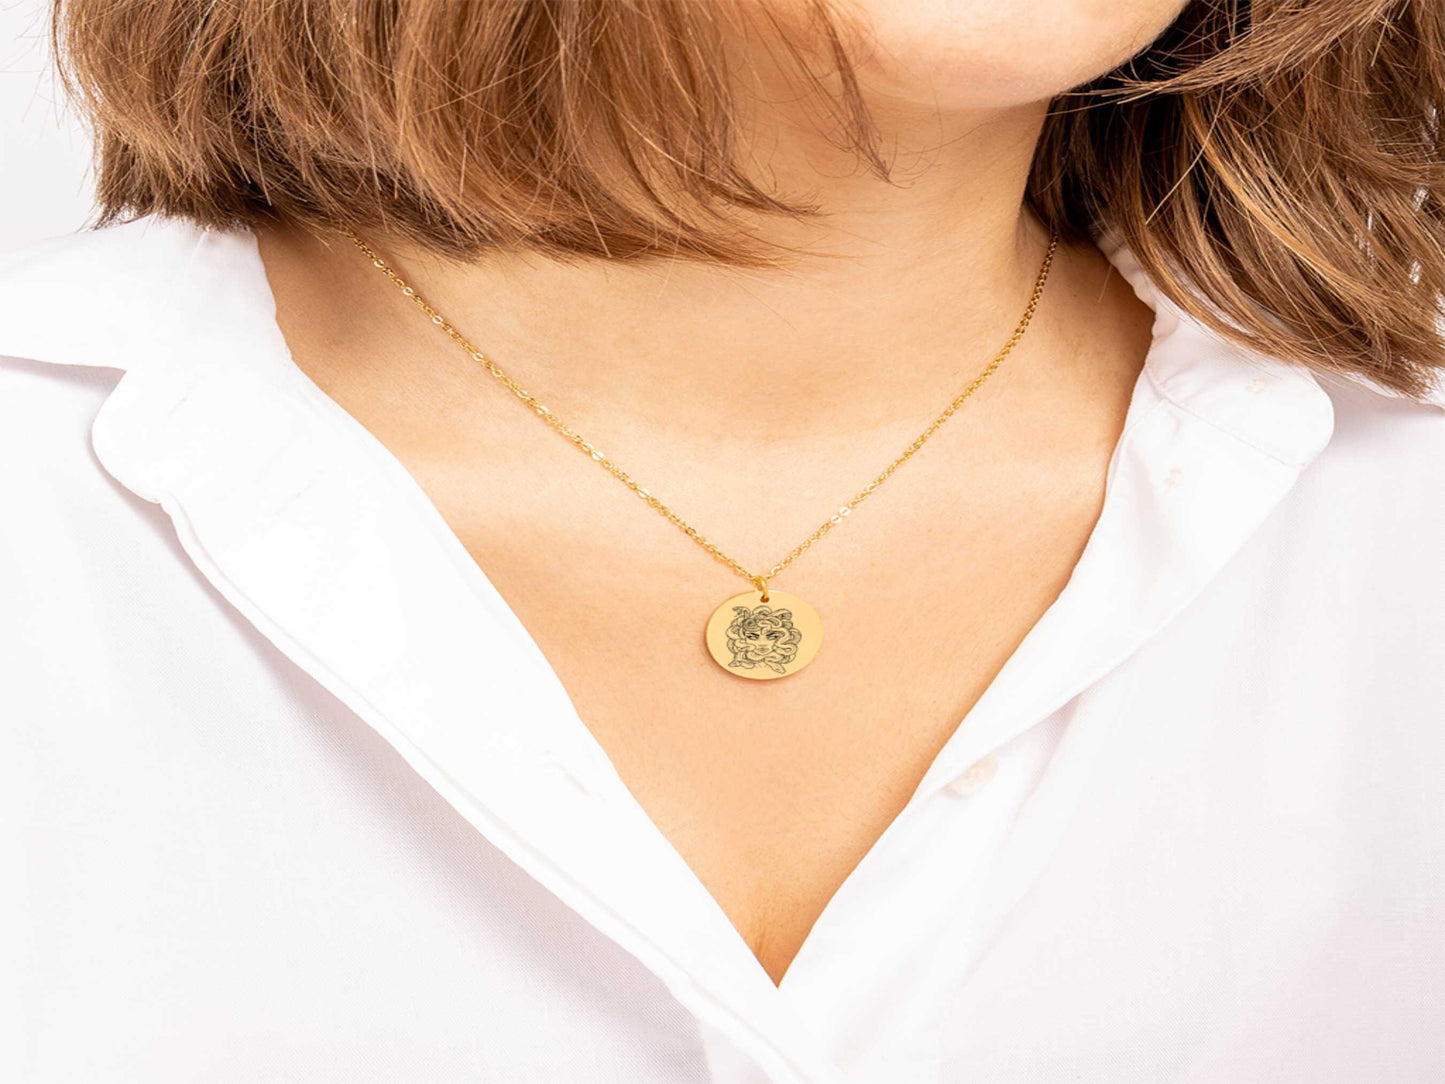 medusa necklace, snake necklace, medusa jewelry, greek mythology, greek necklace, mythology necklace, goth necklace, necklace gift